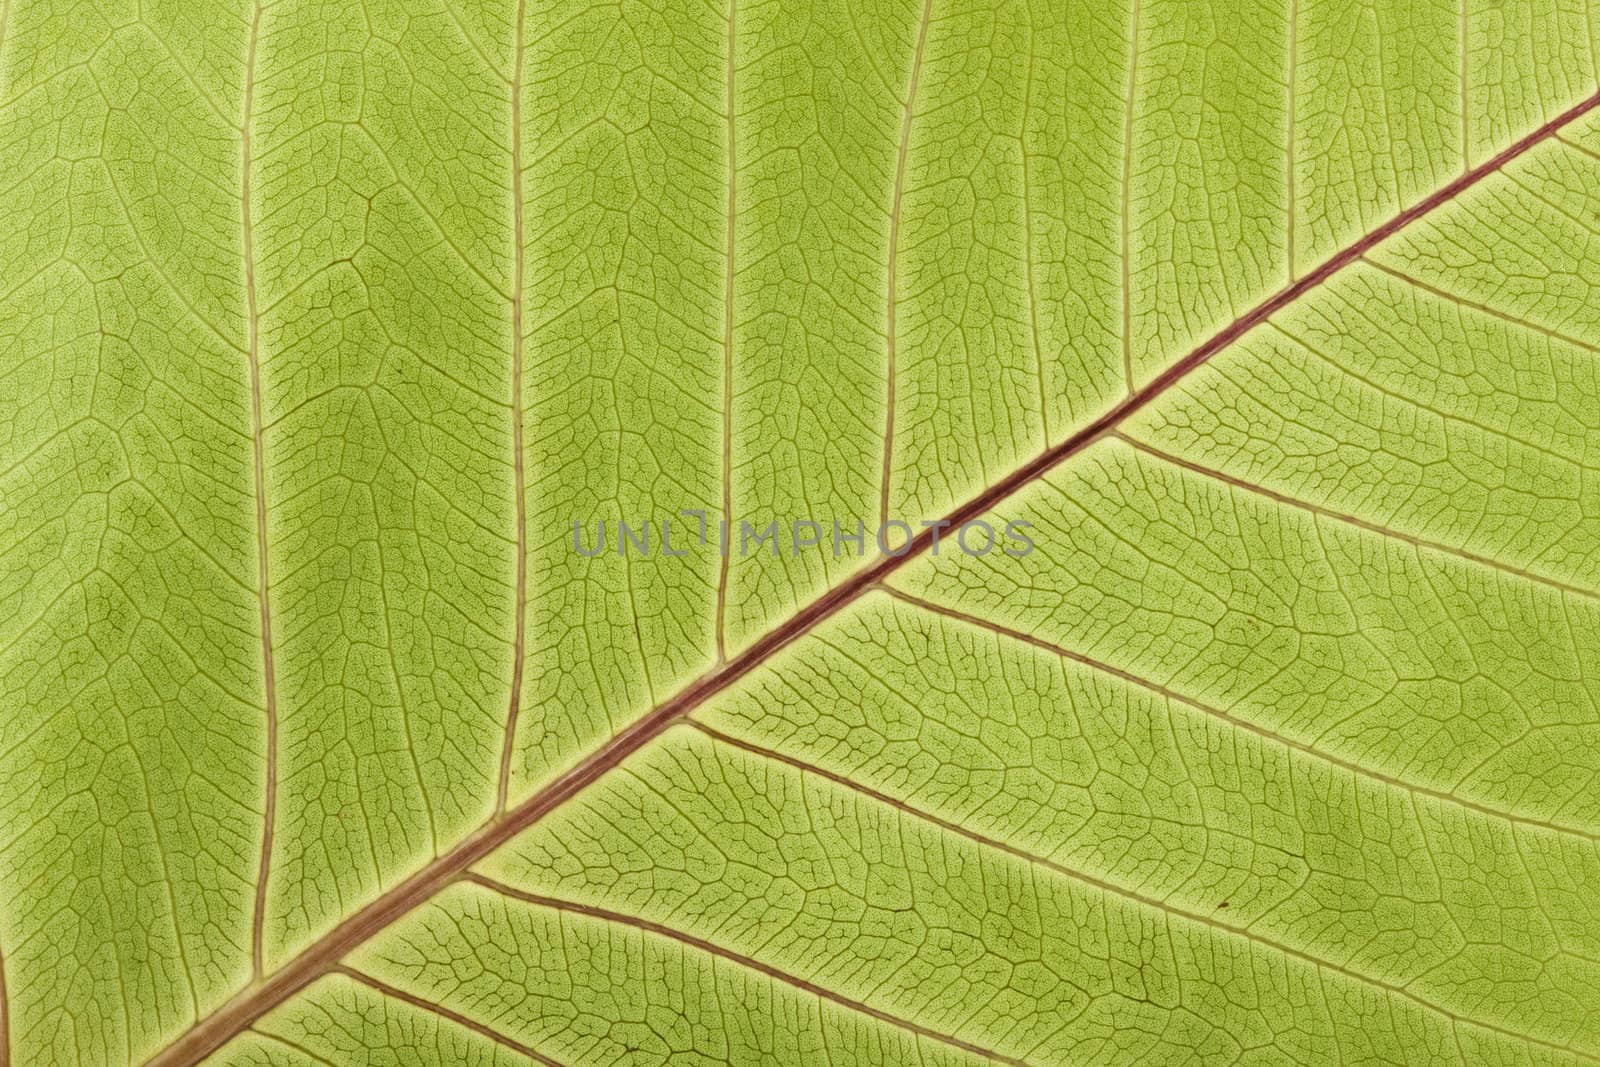 Close-up of Leaf Veins detail of bodhi leaf